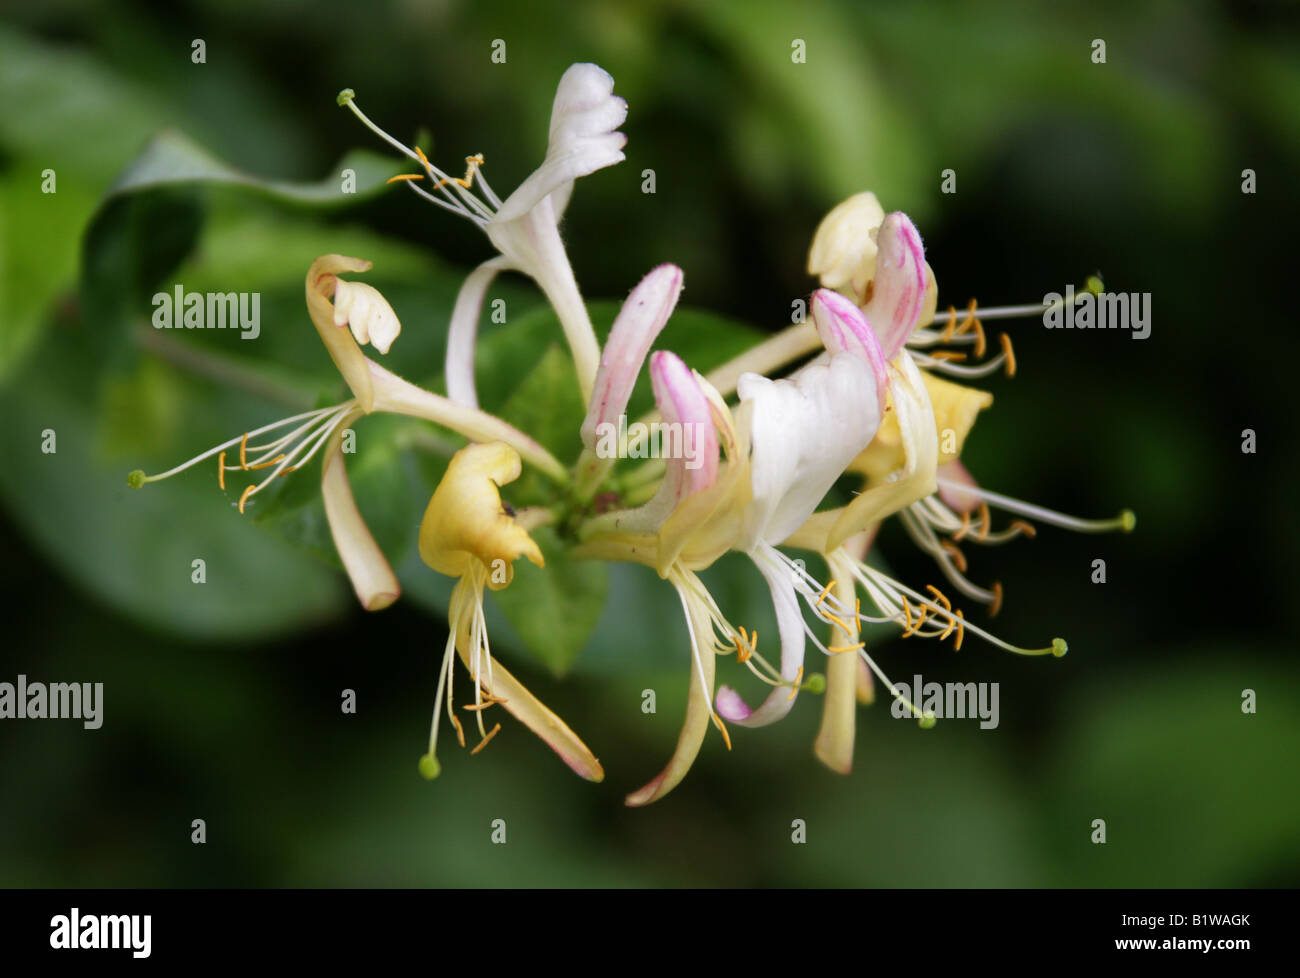 Honeysuckle Lonicera periclymenum Caprifoliaceae British wild flower Stock Photo